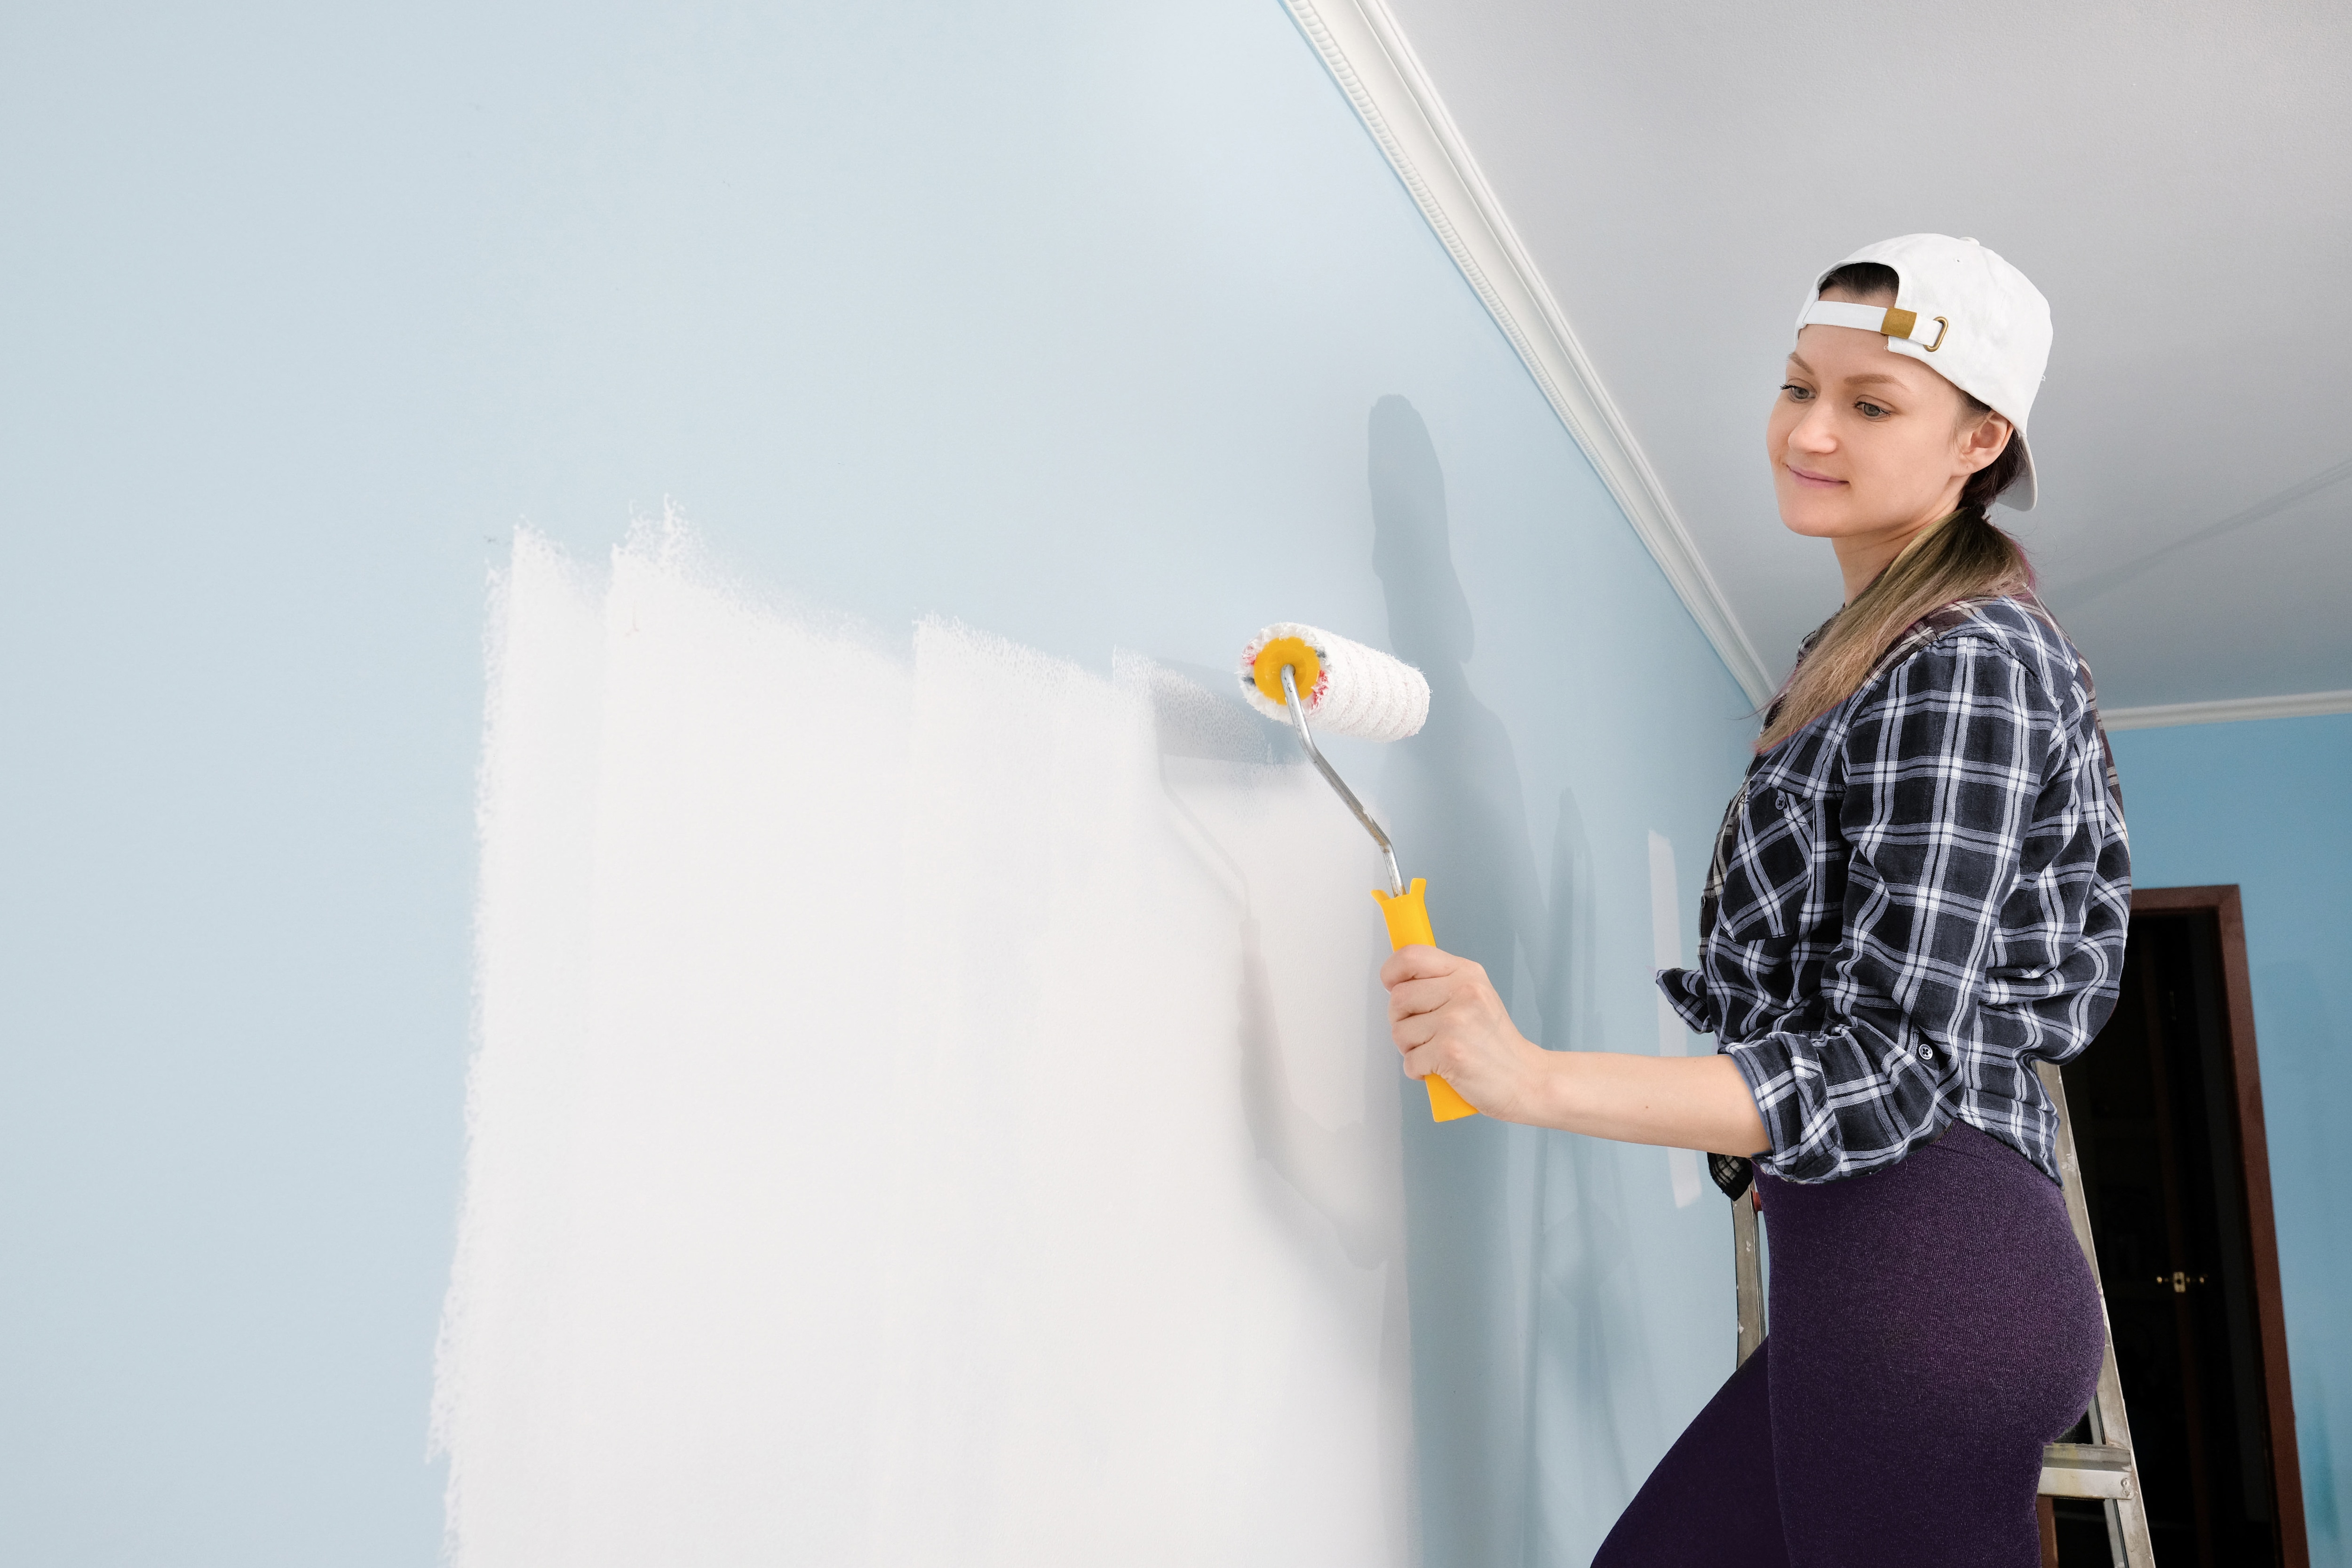 Comment apprêter un mur pour le préparer avant de le peindre.